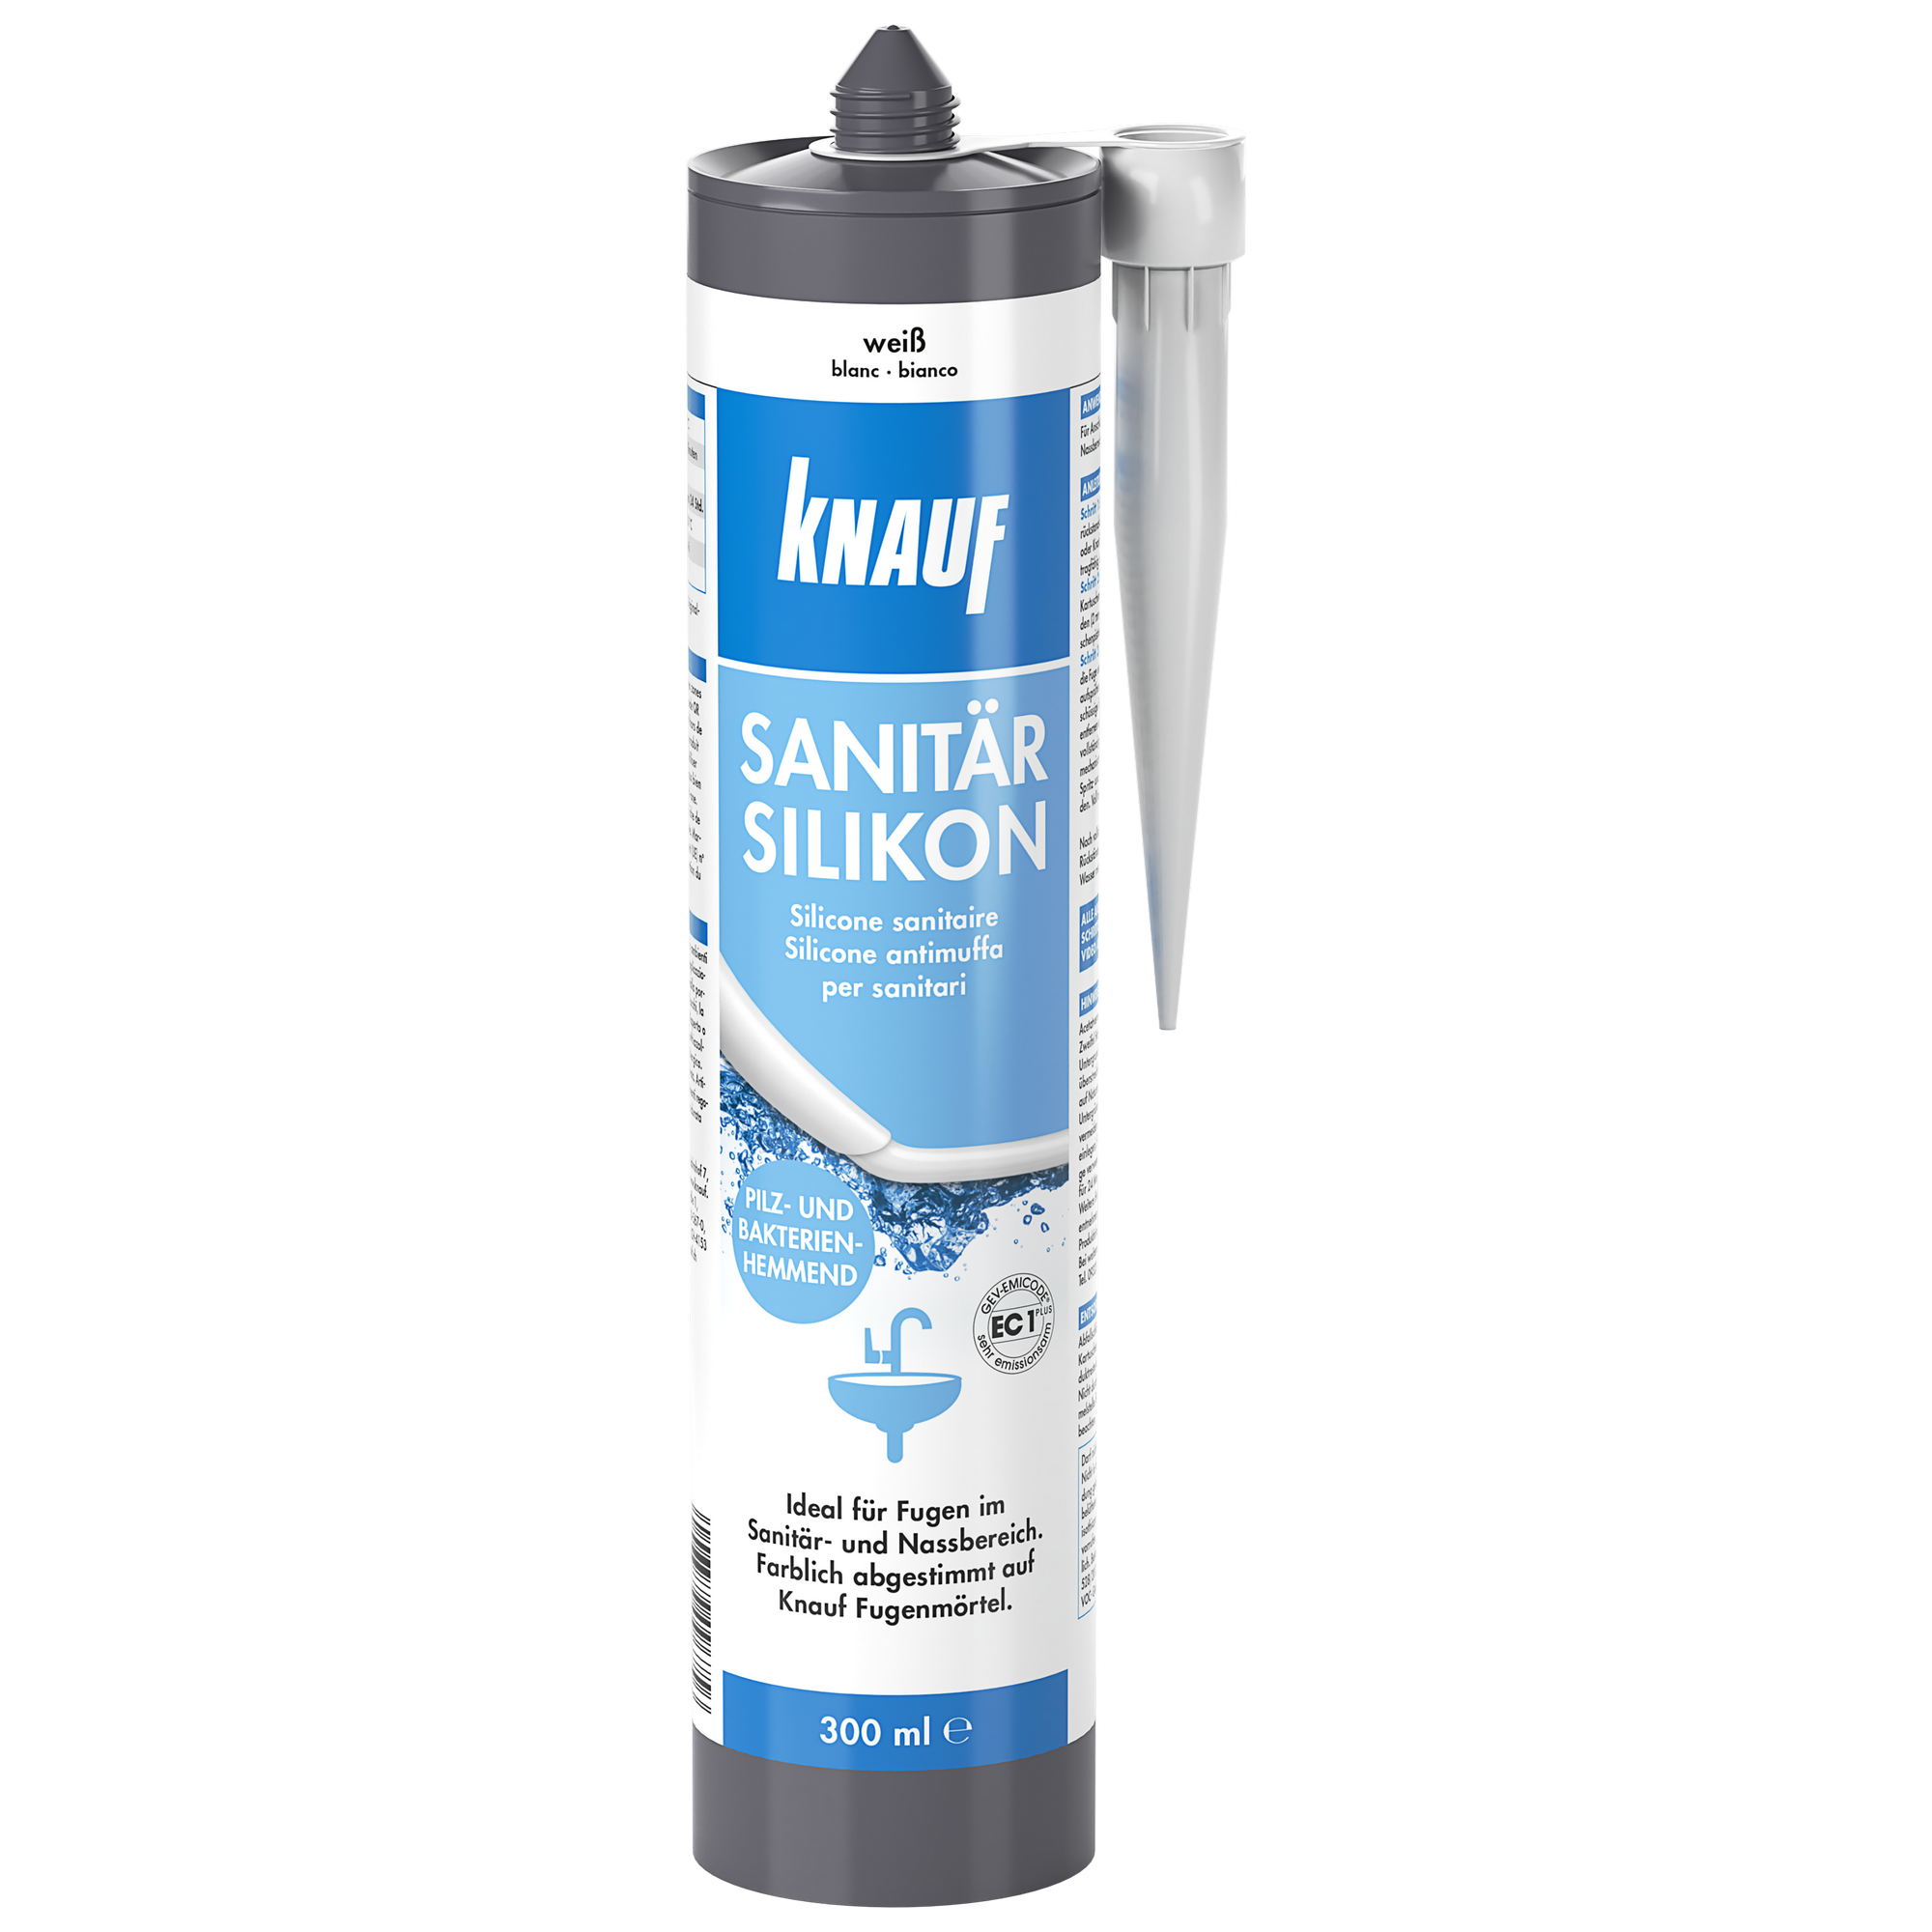 Sanitärsilikon weiß 300 ml + product picture